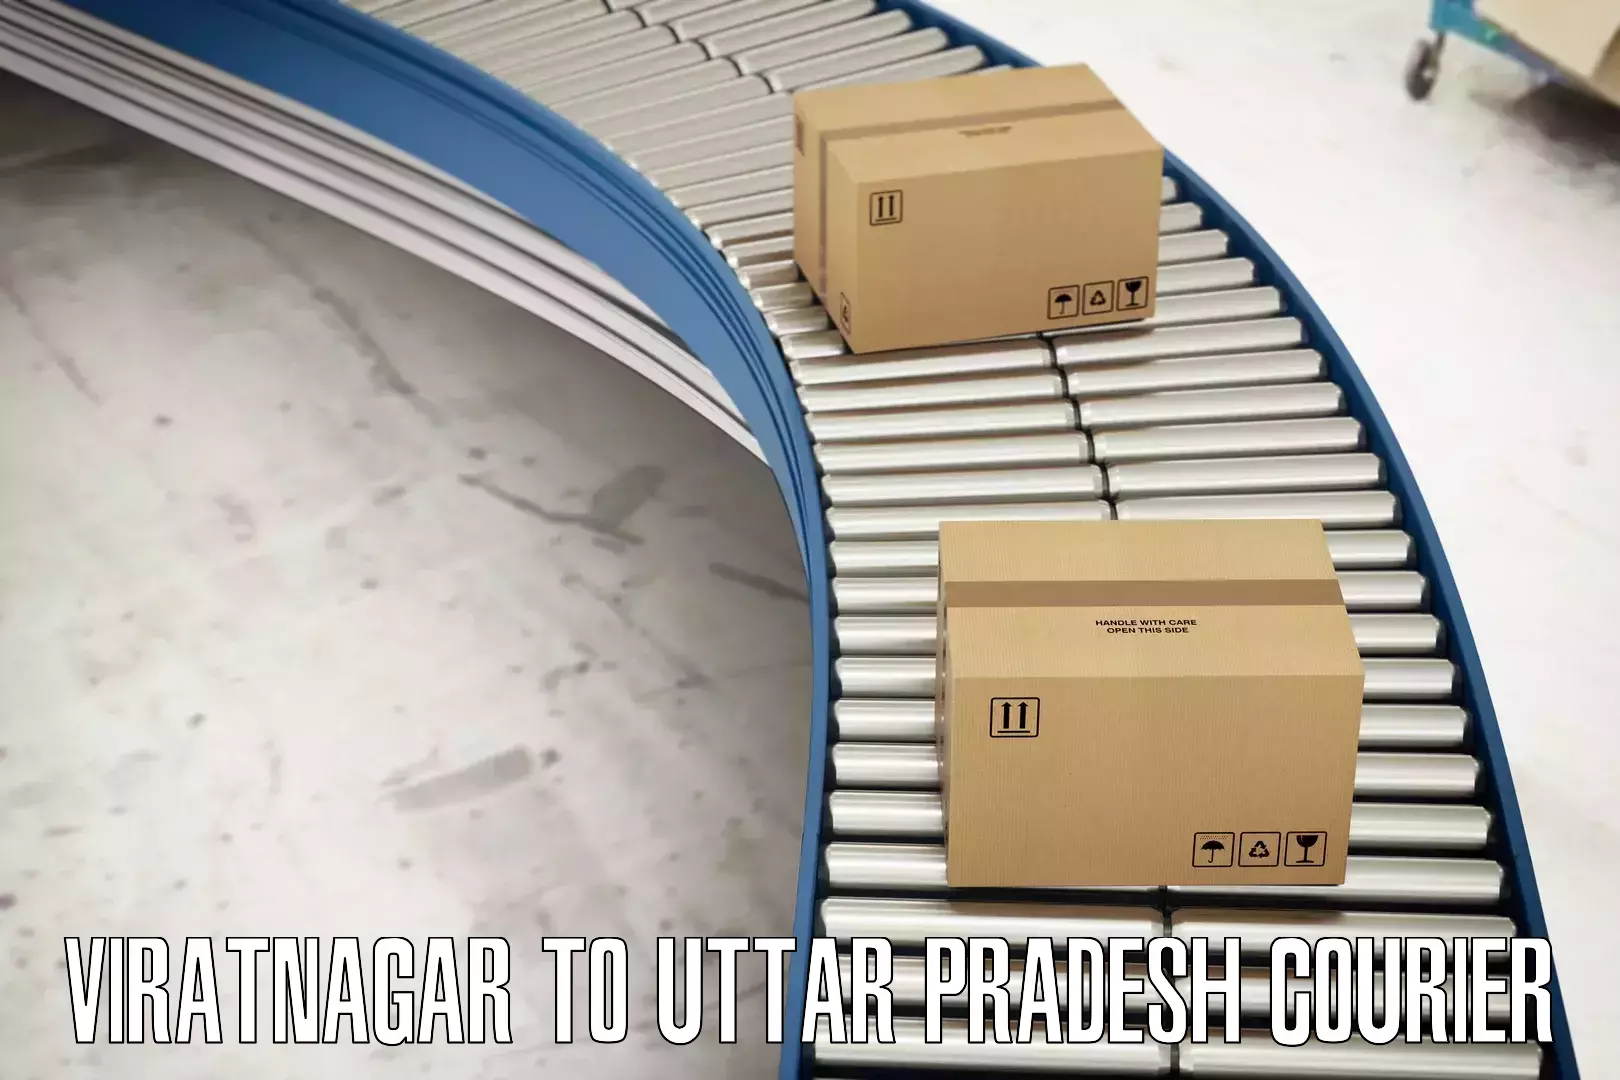 Online shipping calculator Viratnagar to Bhadohi